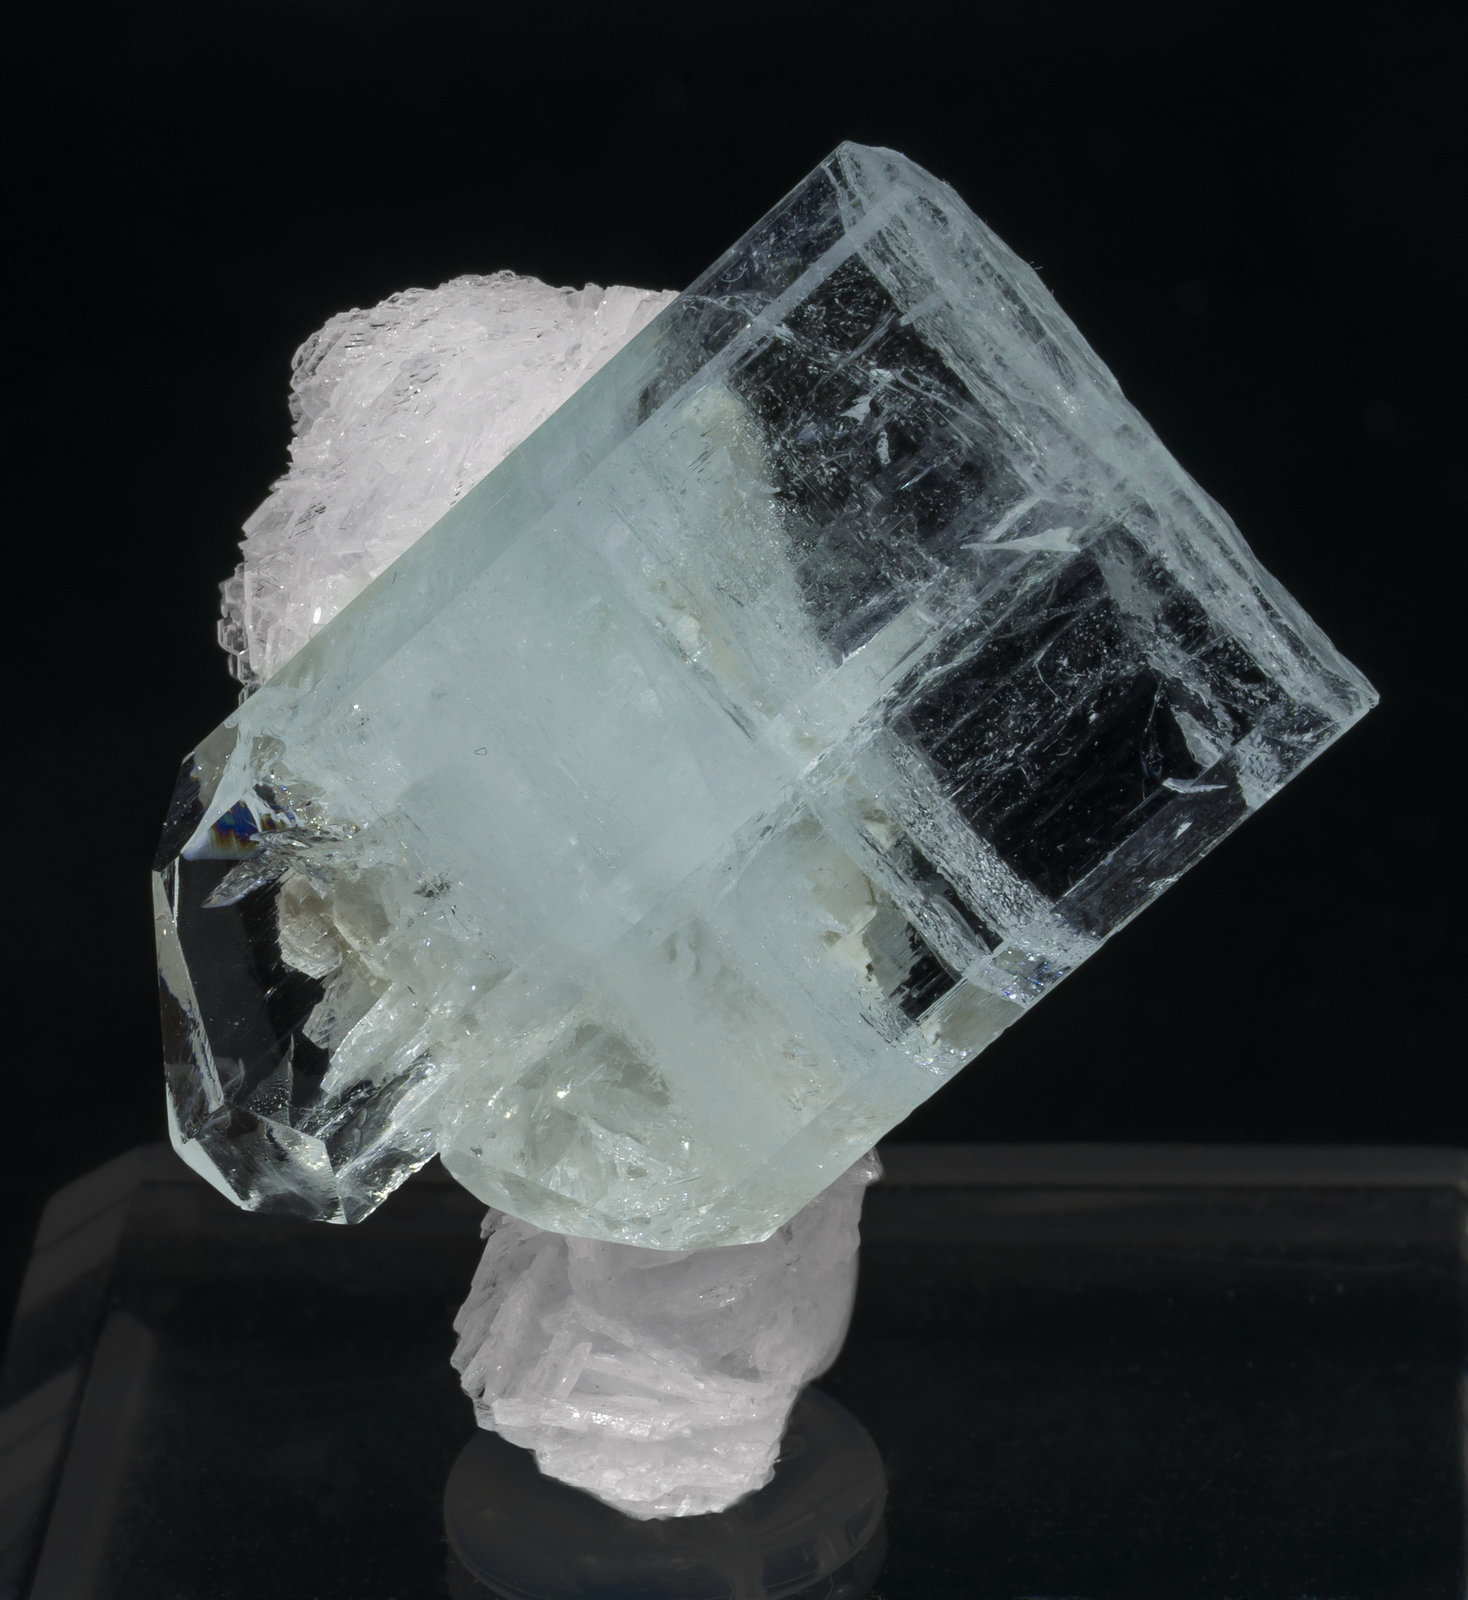 specimens/s_imagesAH6/Beryl_aquamarine-MV87AH6f.jpg